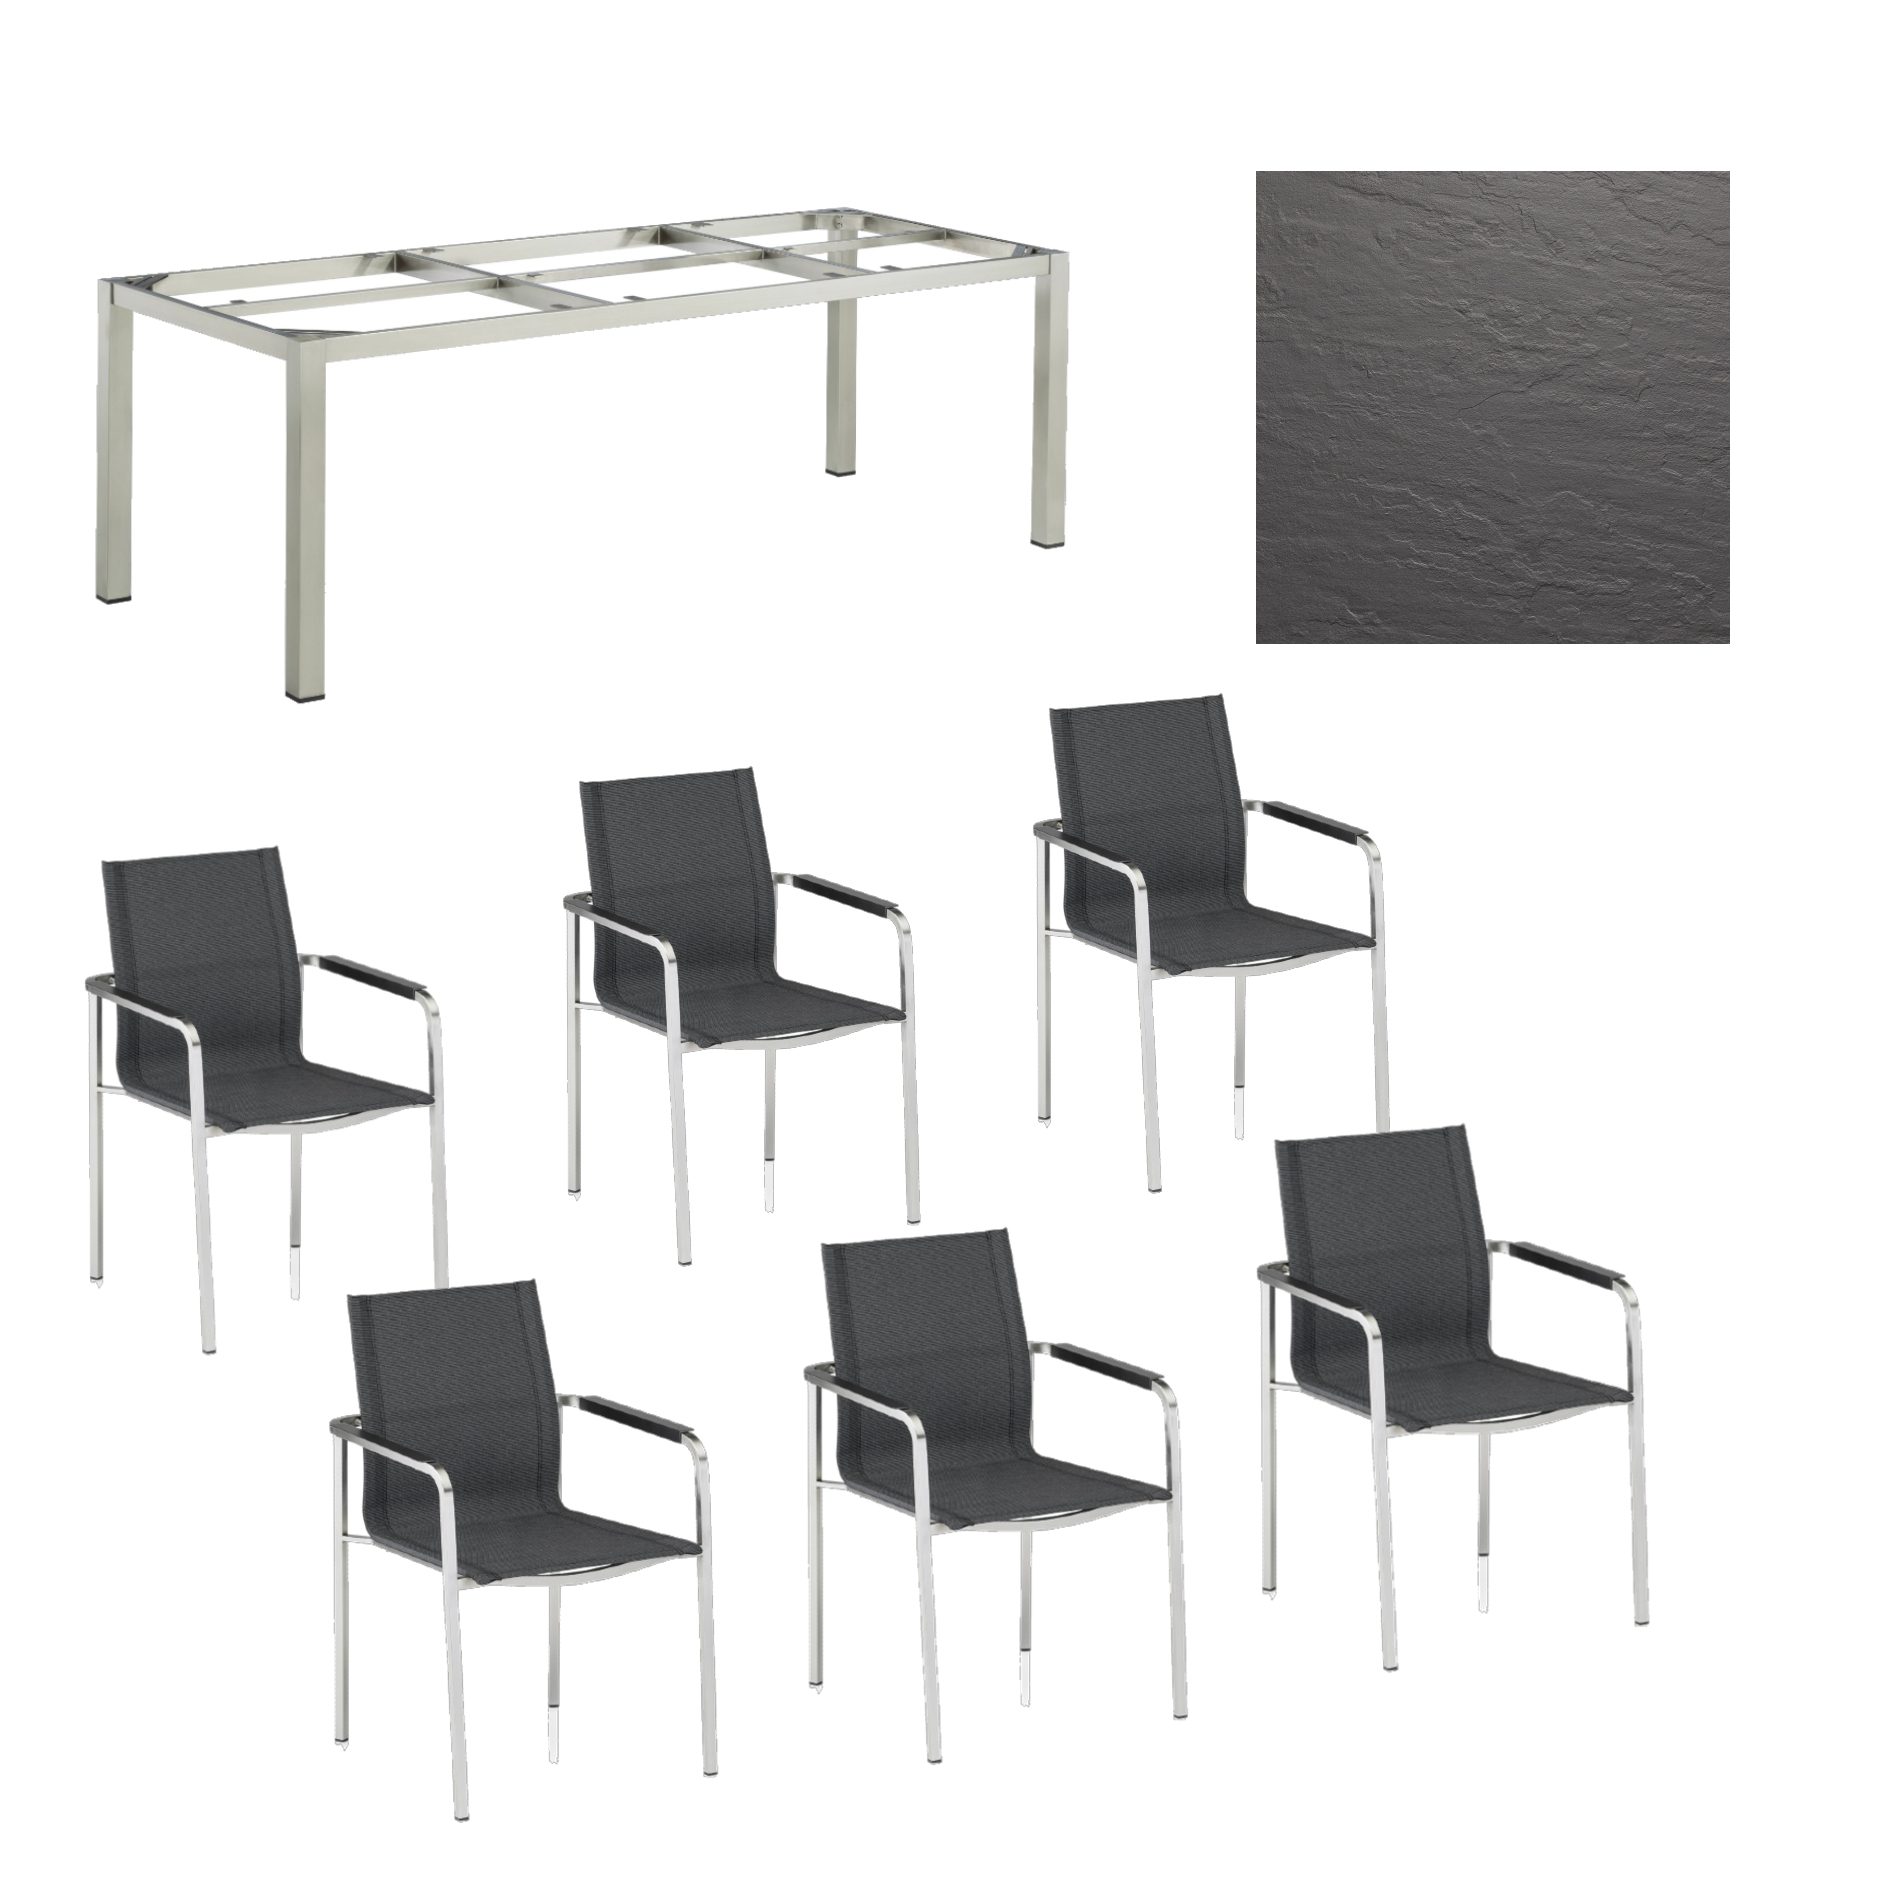 Kettler Gartenmöbel-Set mit "Feel" Stapelstuhl und "Cubic" Tisch, Gestelle Edelstahl, Sitz grau meliert, Tischplatte Kettalux-Plus anthrazit (Schieferoptik)